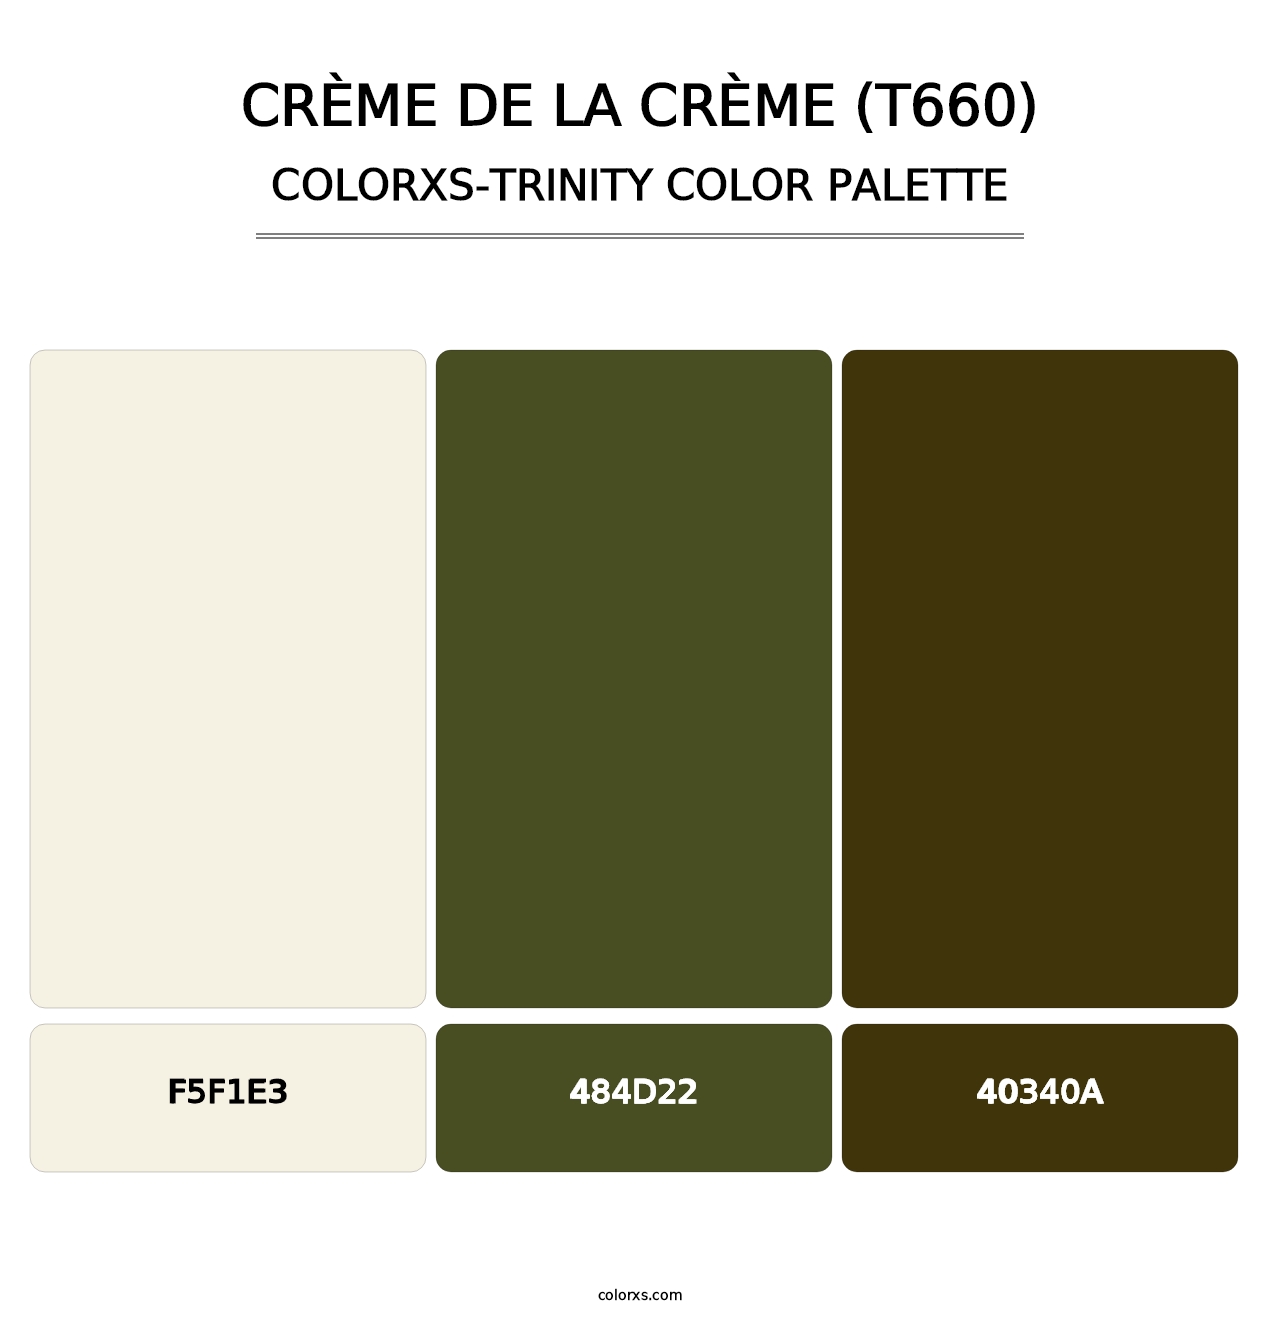 Crème de la Crème (T660) - Colorxs Trinity Palette